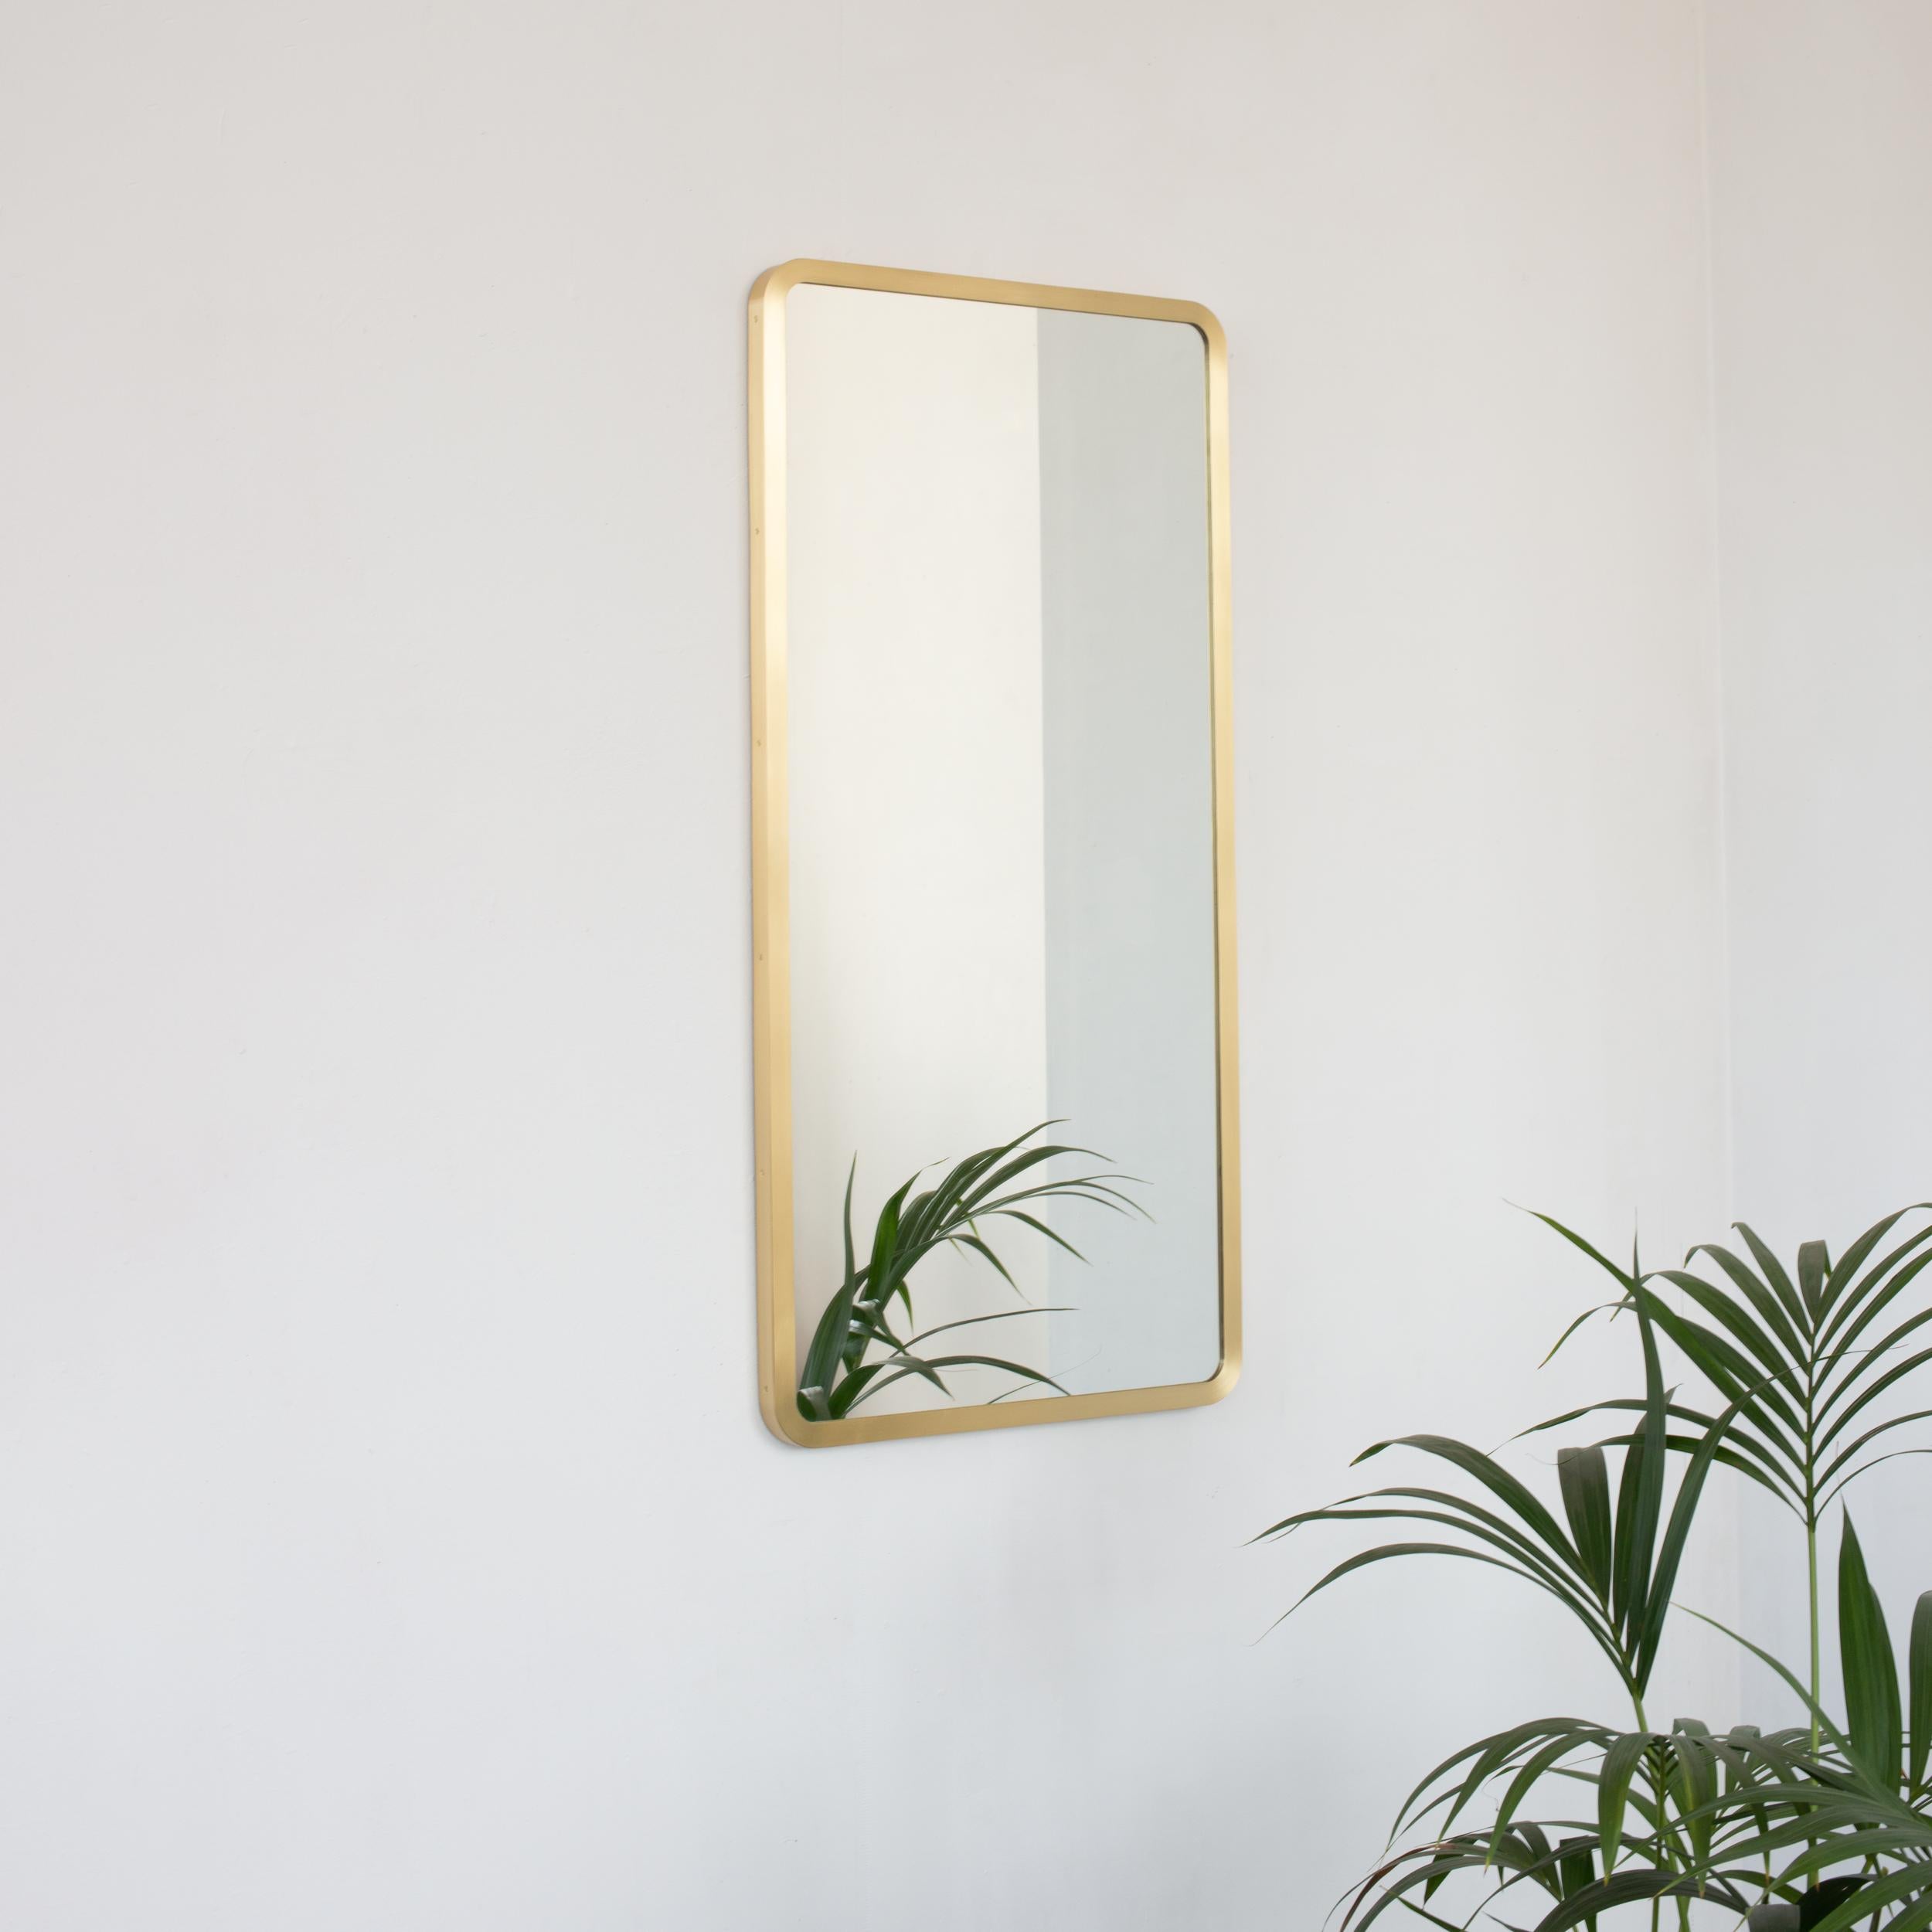 Moderner rechteckiger Spiegel mit einem eleganten Rahmen aus gebürstetem Messing.  Teil der charmanten Quadris™ Kollektion, entworfen und handgefertigt in London, UK. 

Unser brandneues 'Full Frame'-Design behält den schicken und eleganten Stil der